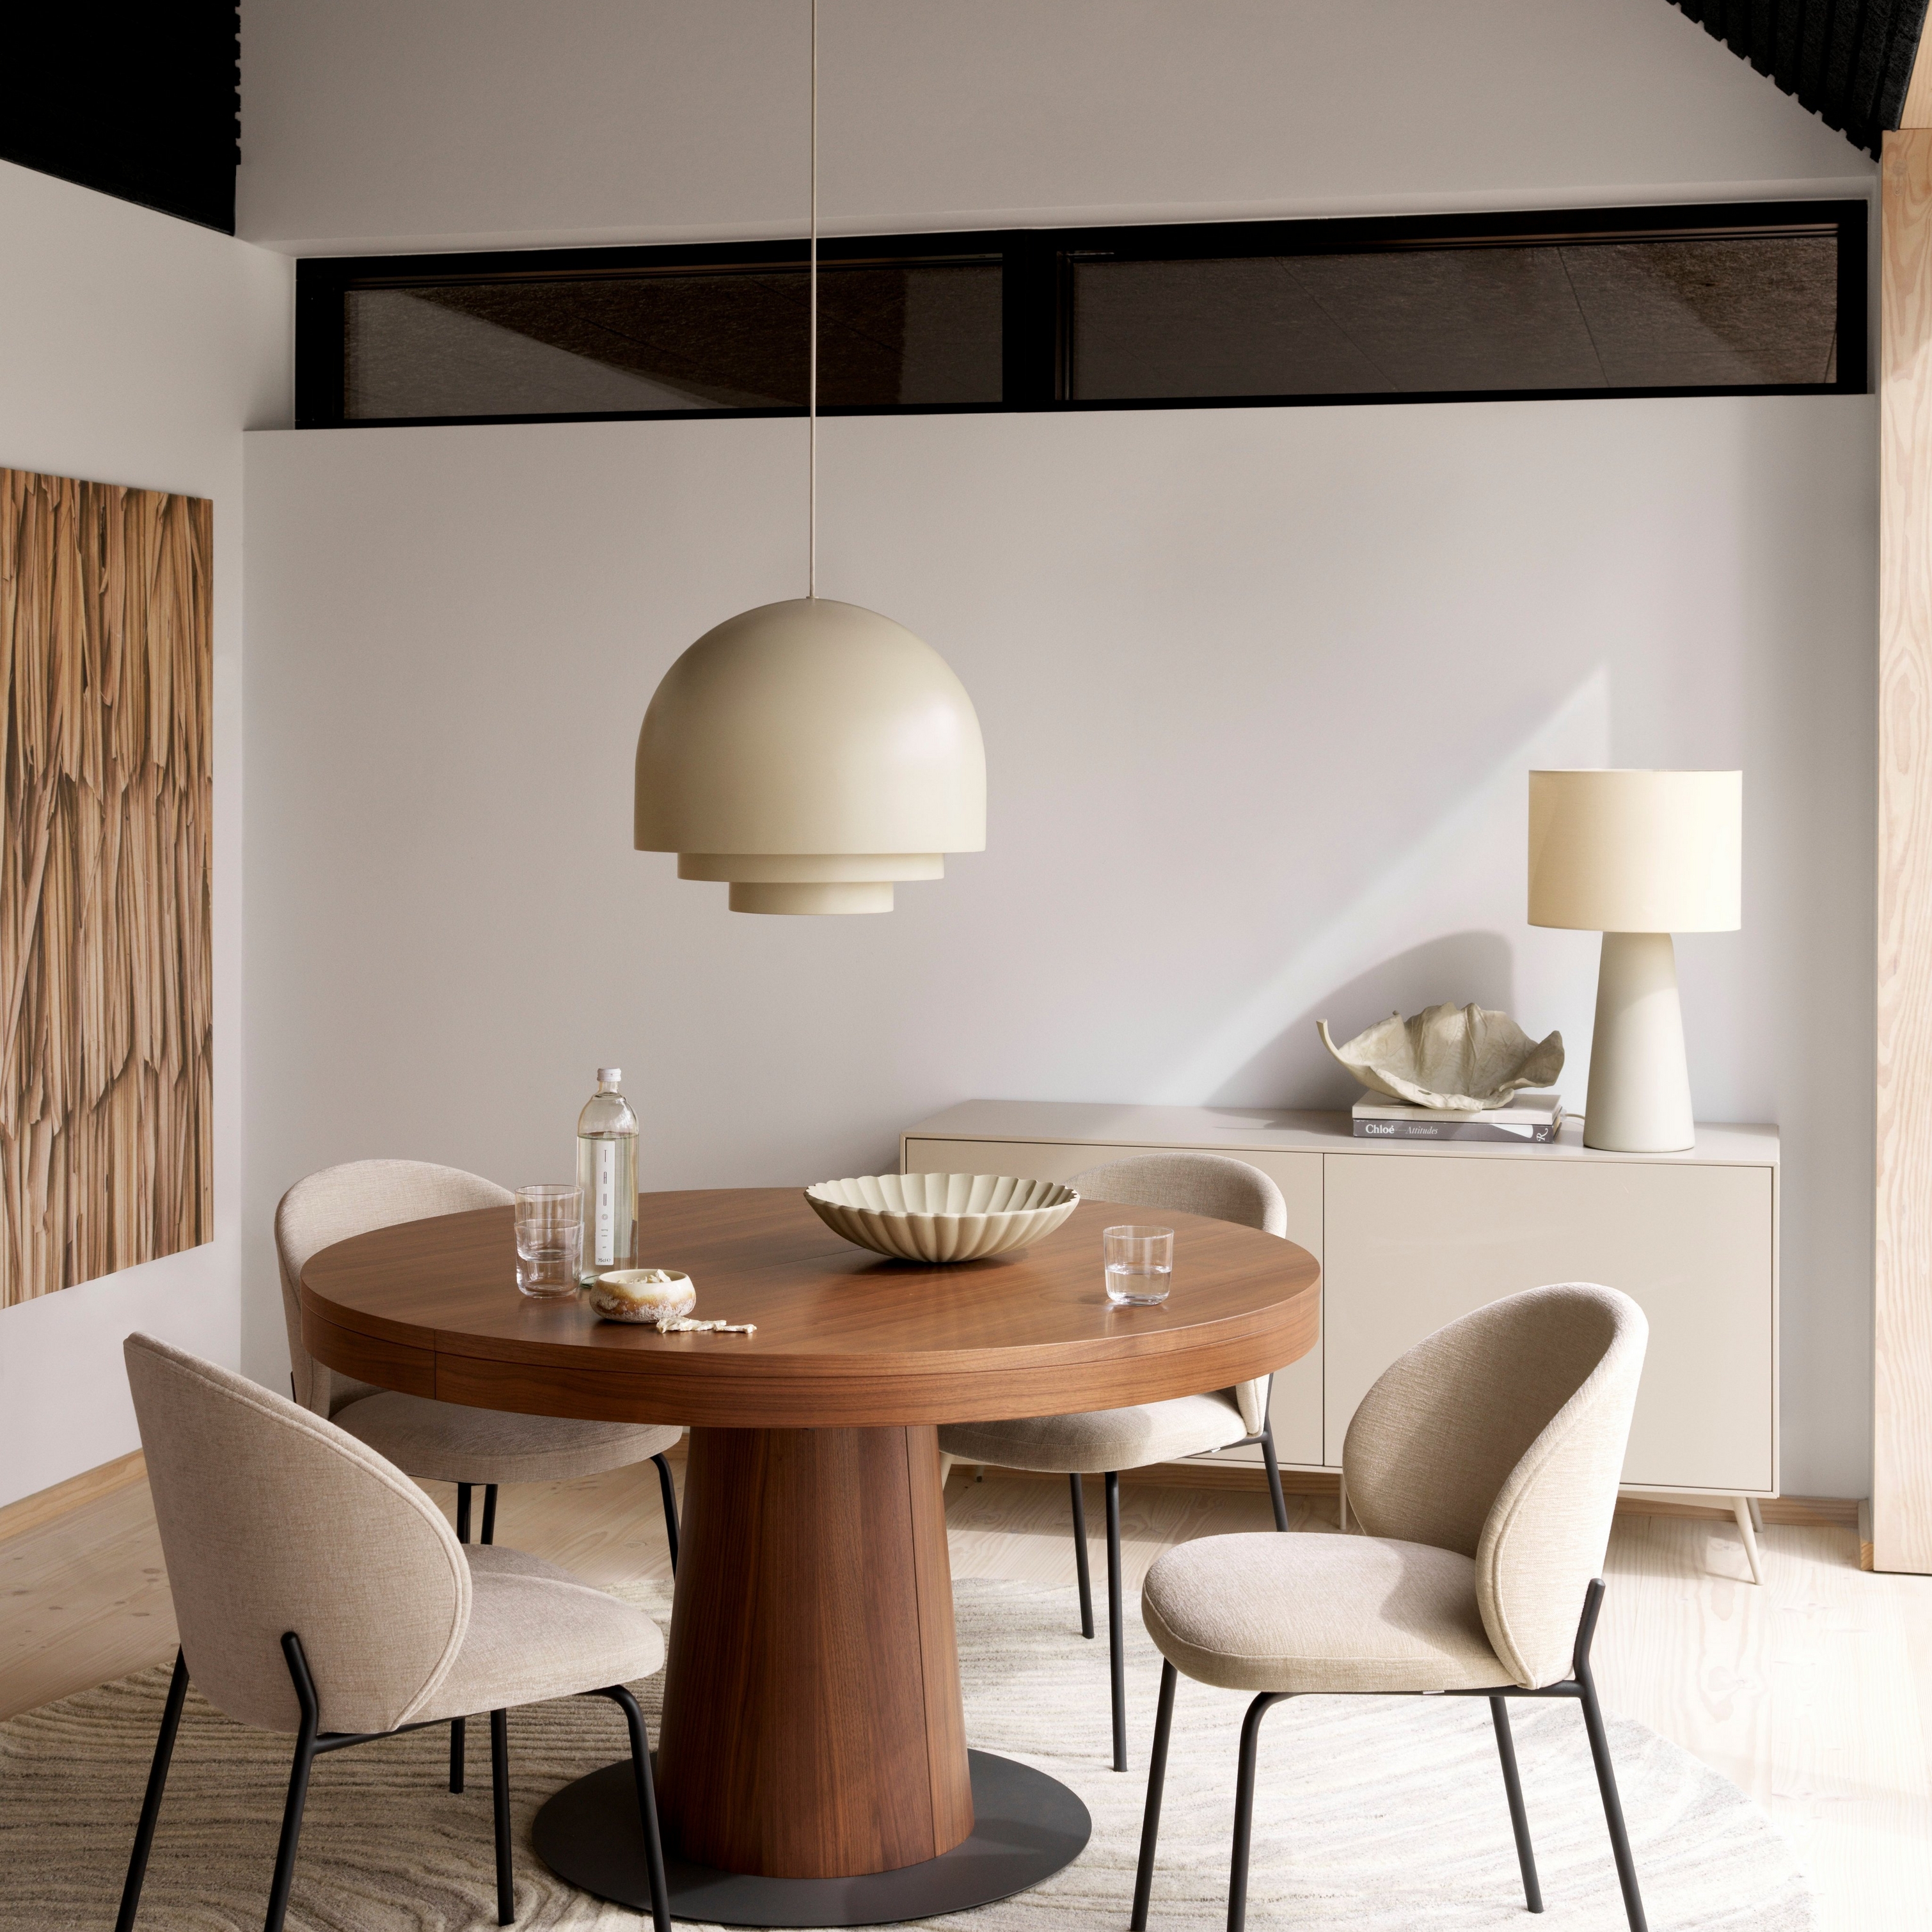 Modernes Esszimmer mit rundem Granada Tisch aus Holz, beigen Princeton Stühlen, Pendelleuchte und cremefarbenem Teppich.